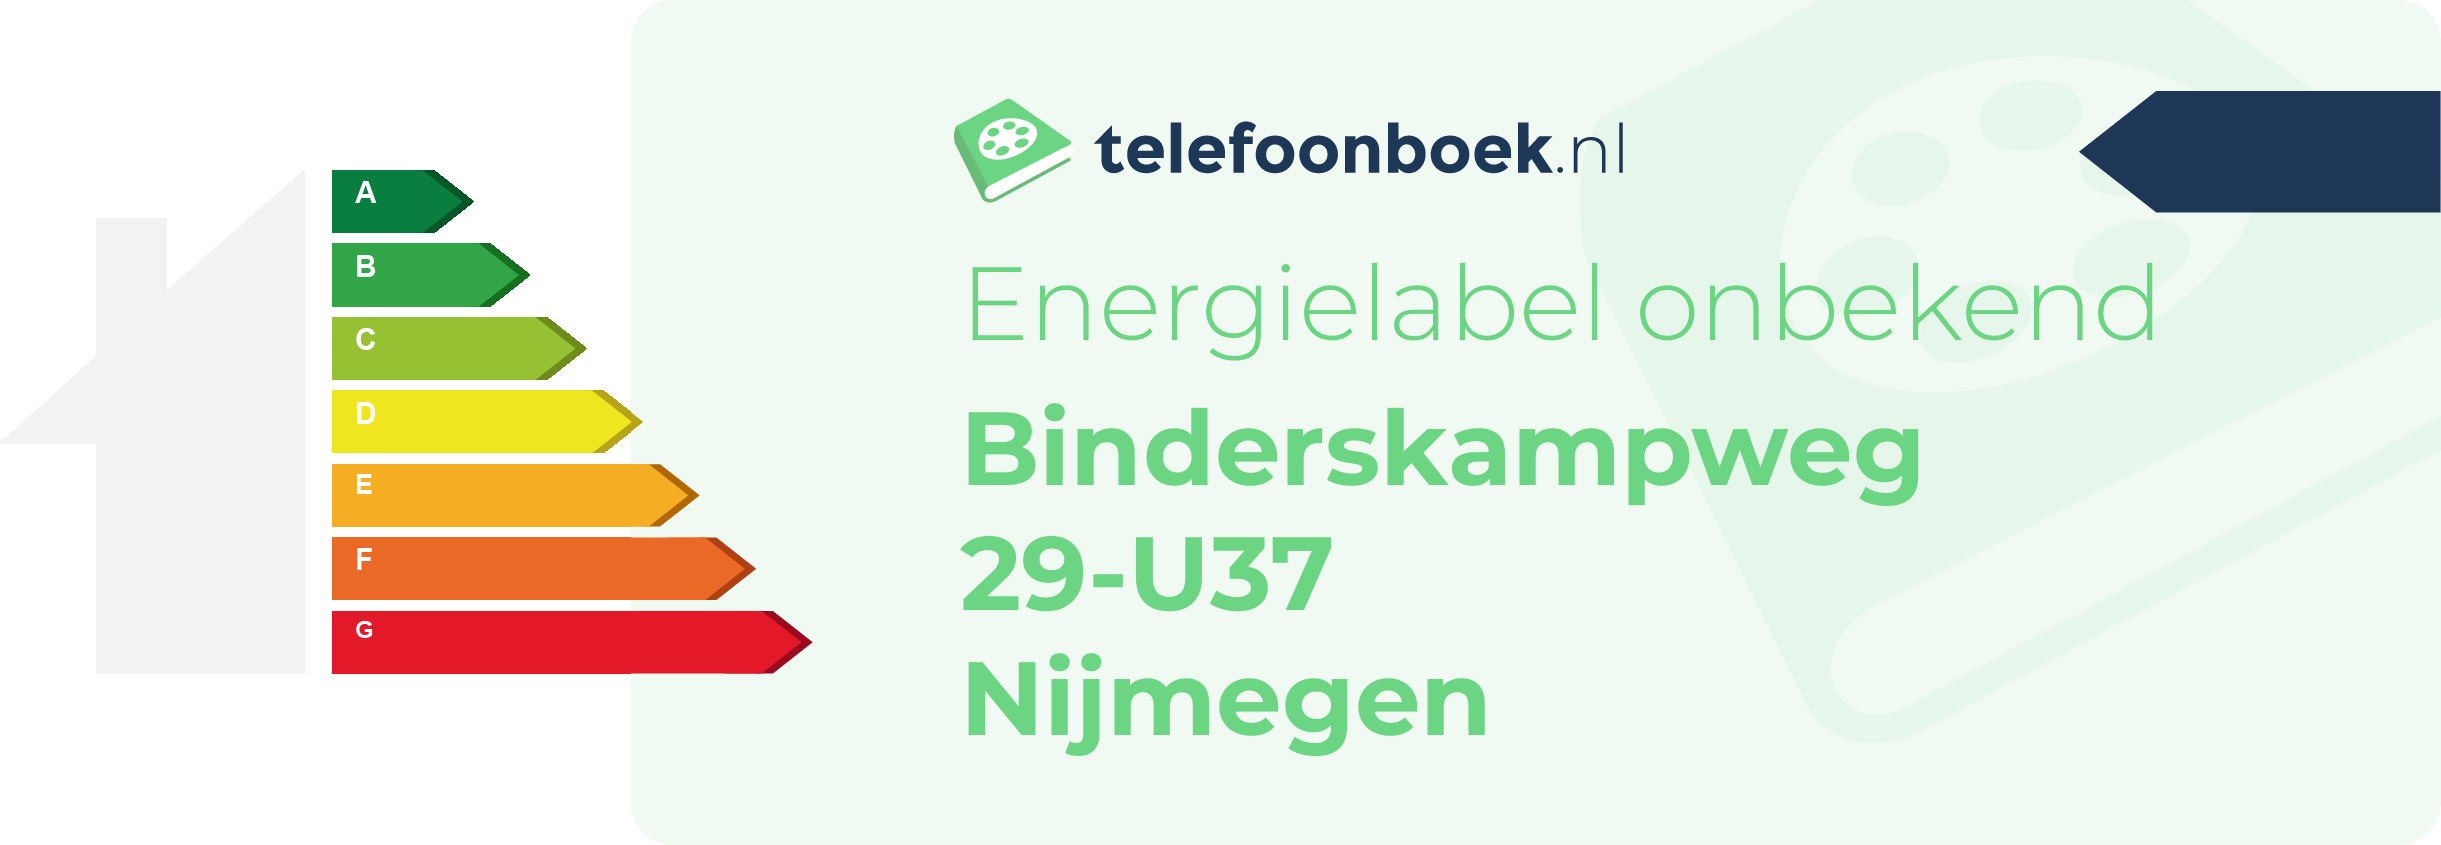 Energielabel Binderskampweg 29-U37 Nijmegen